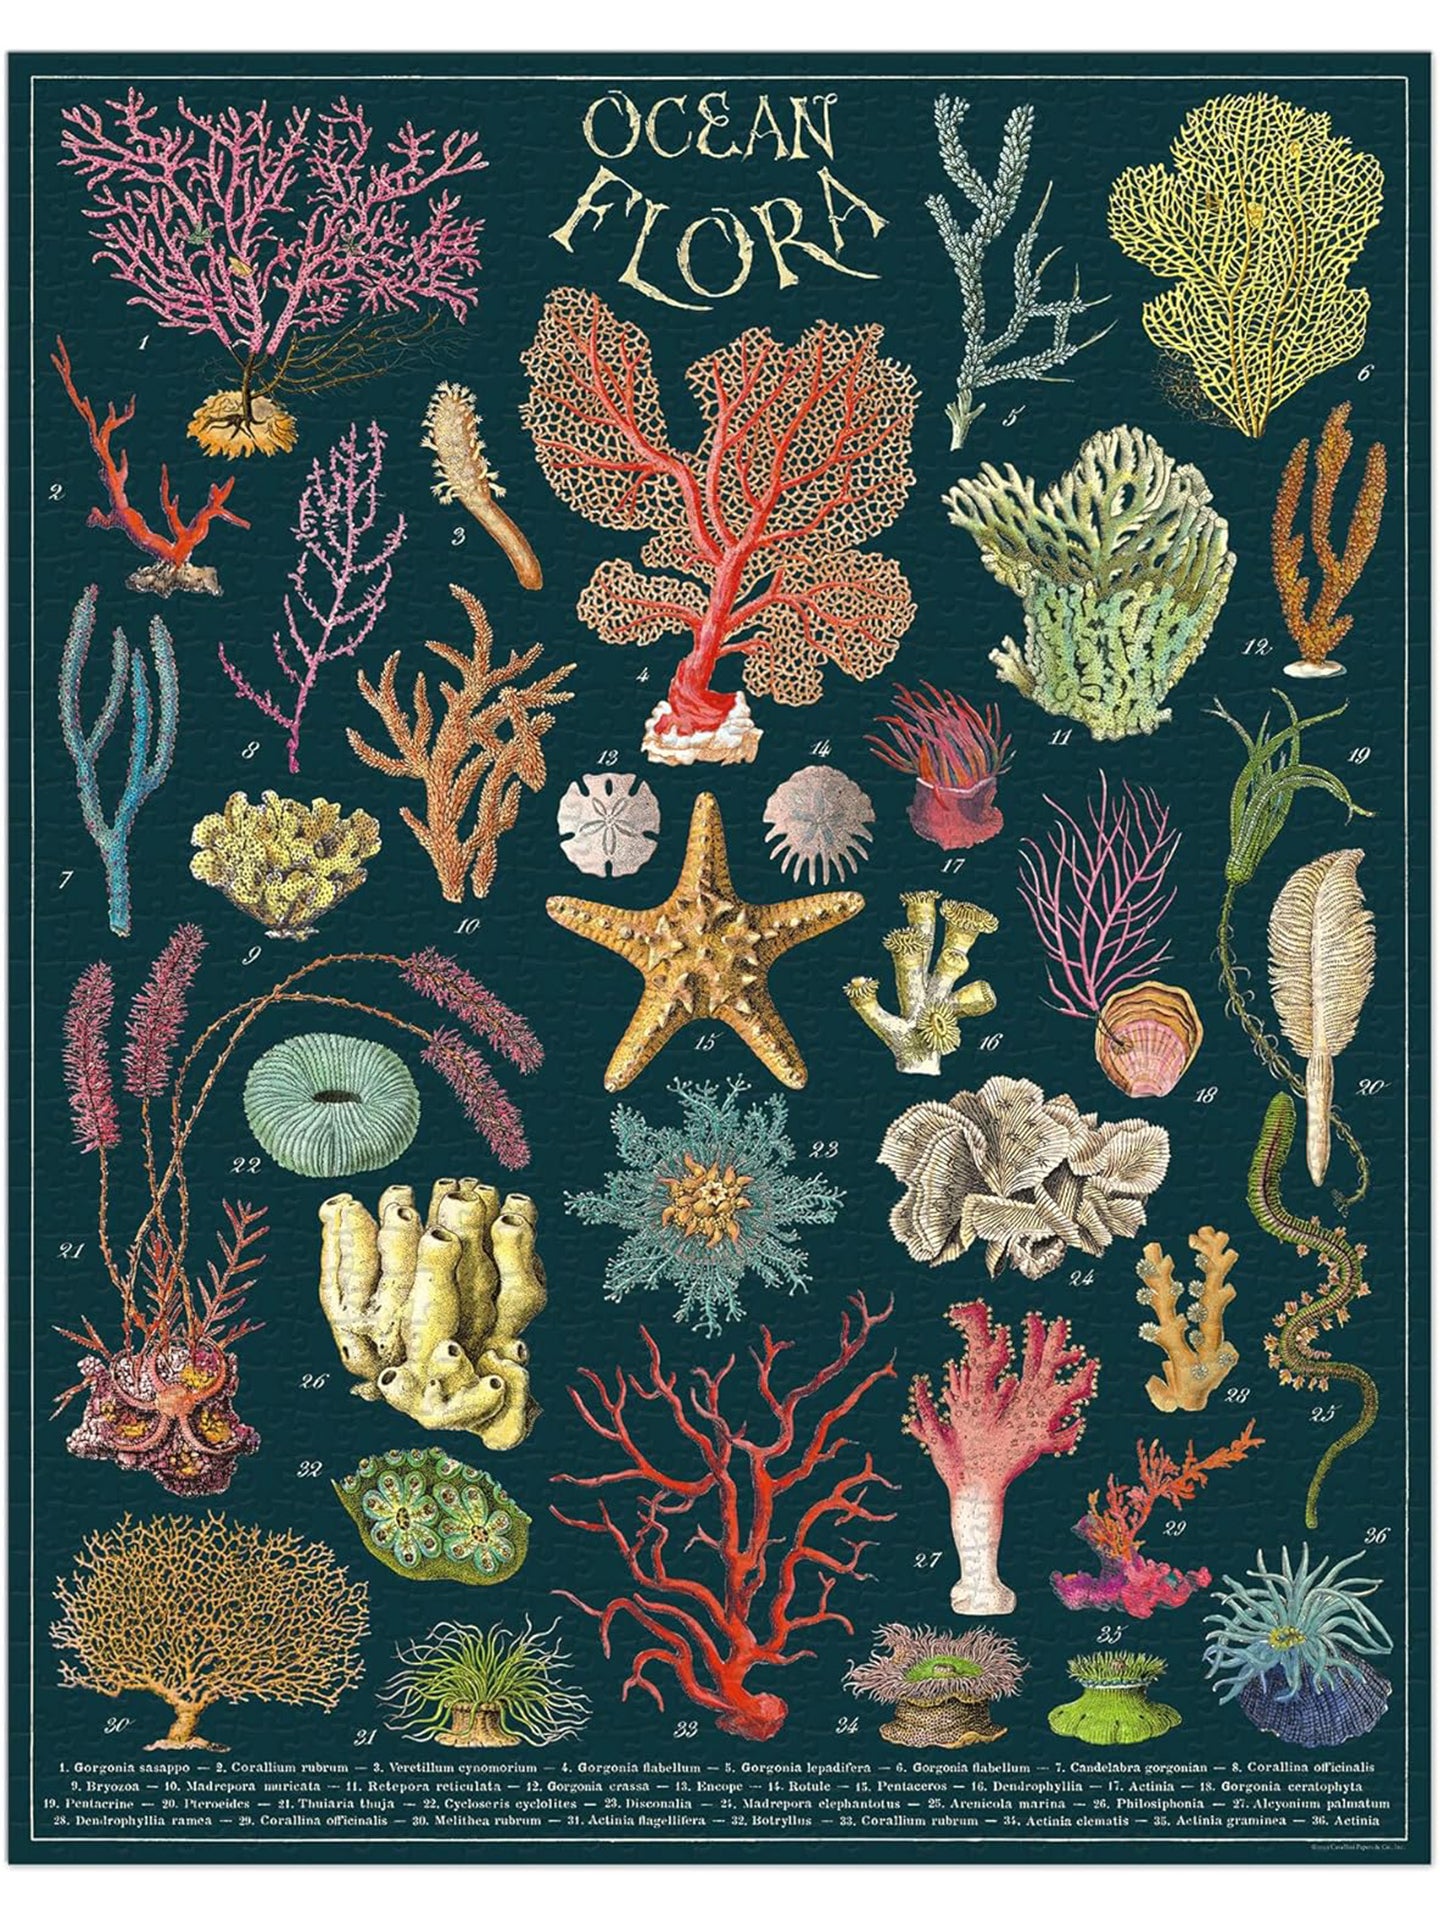 Vintage Puzzle Ocean Flora (1000 pcs)